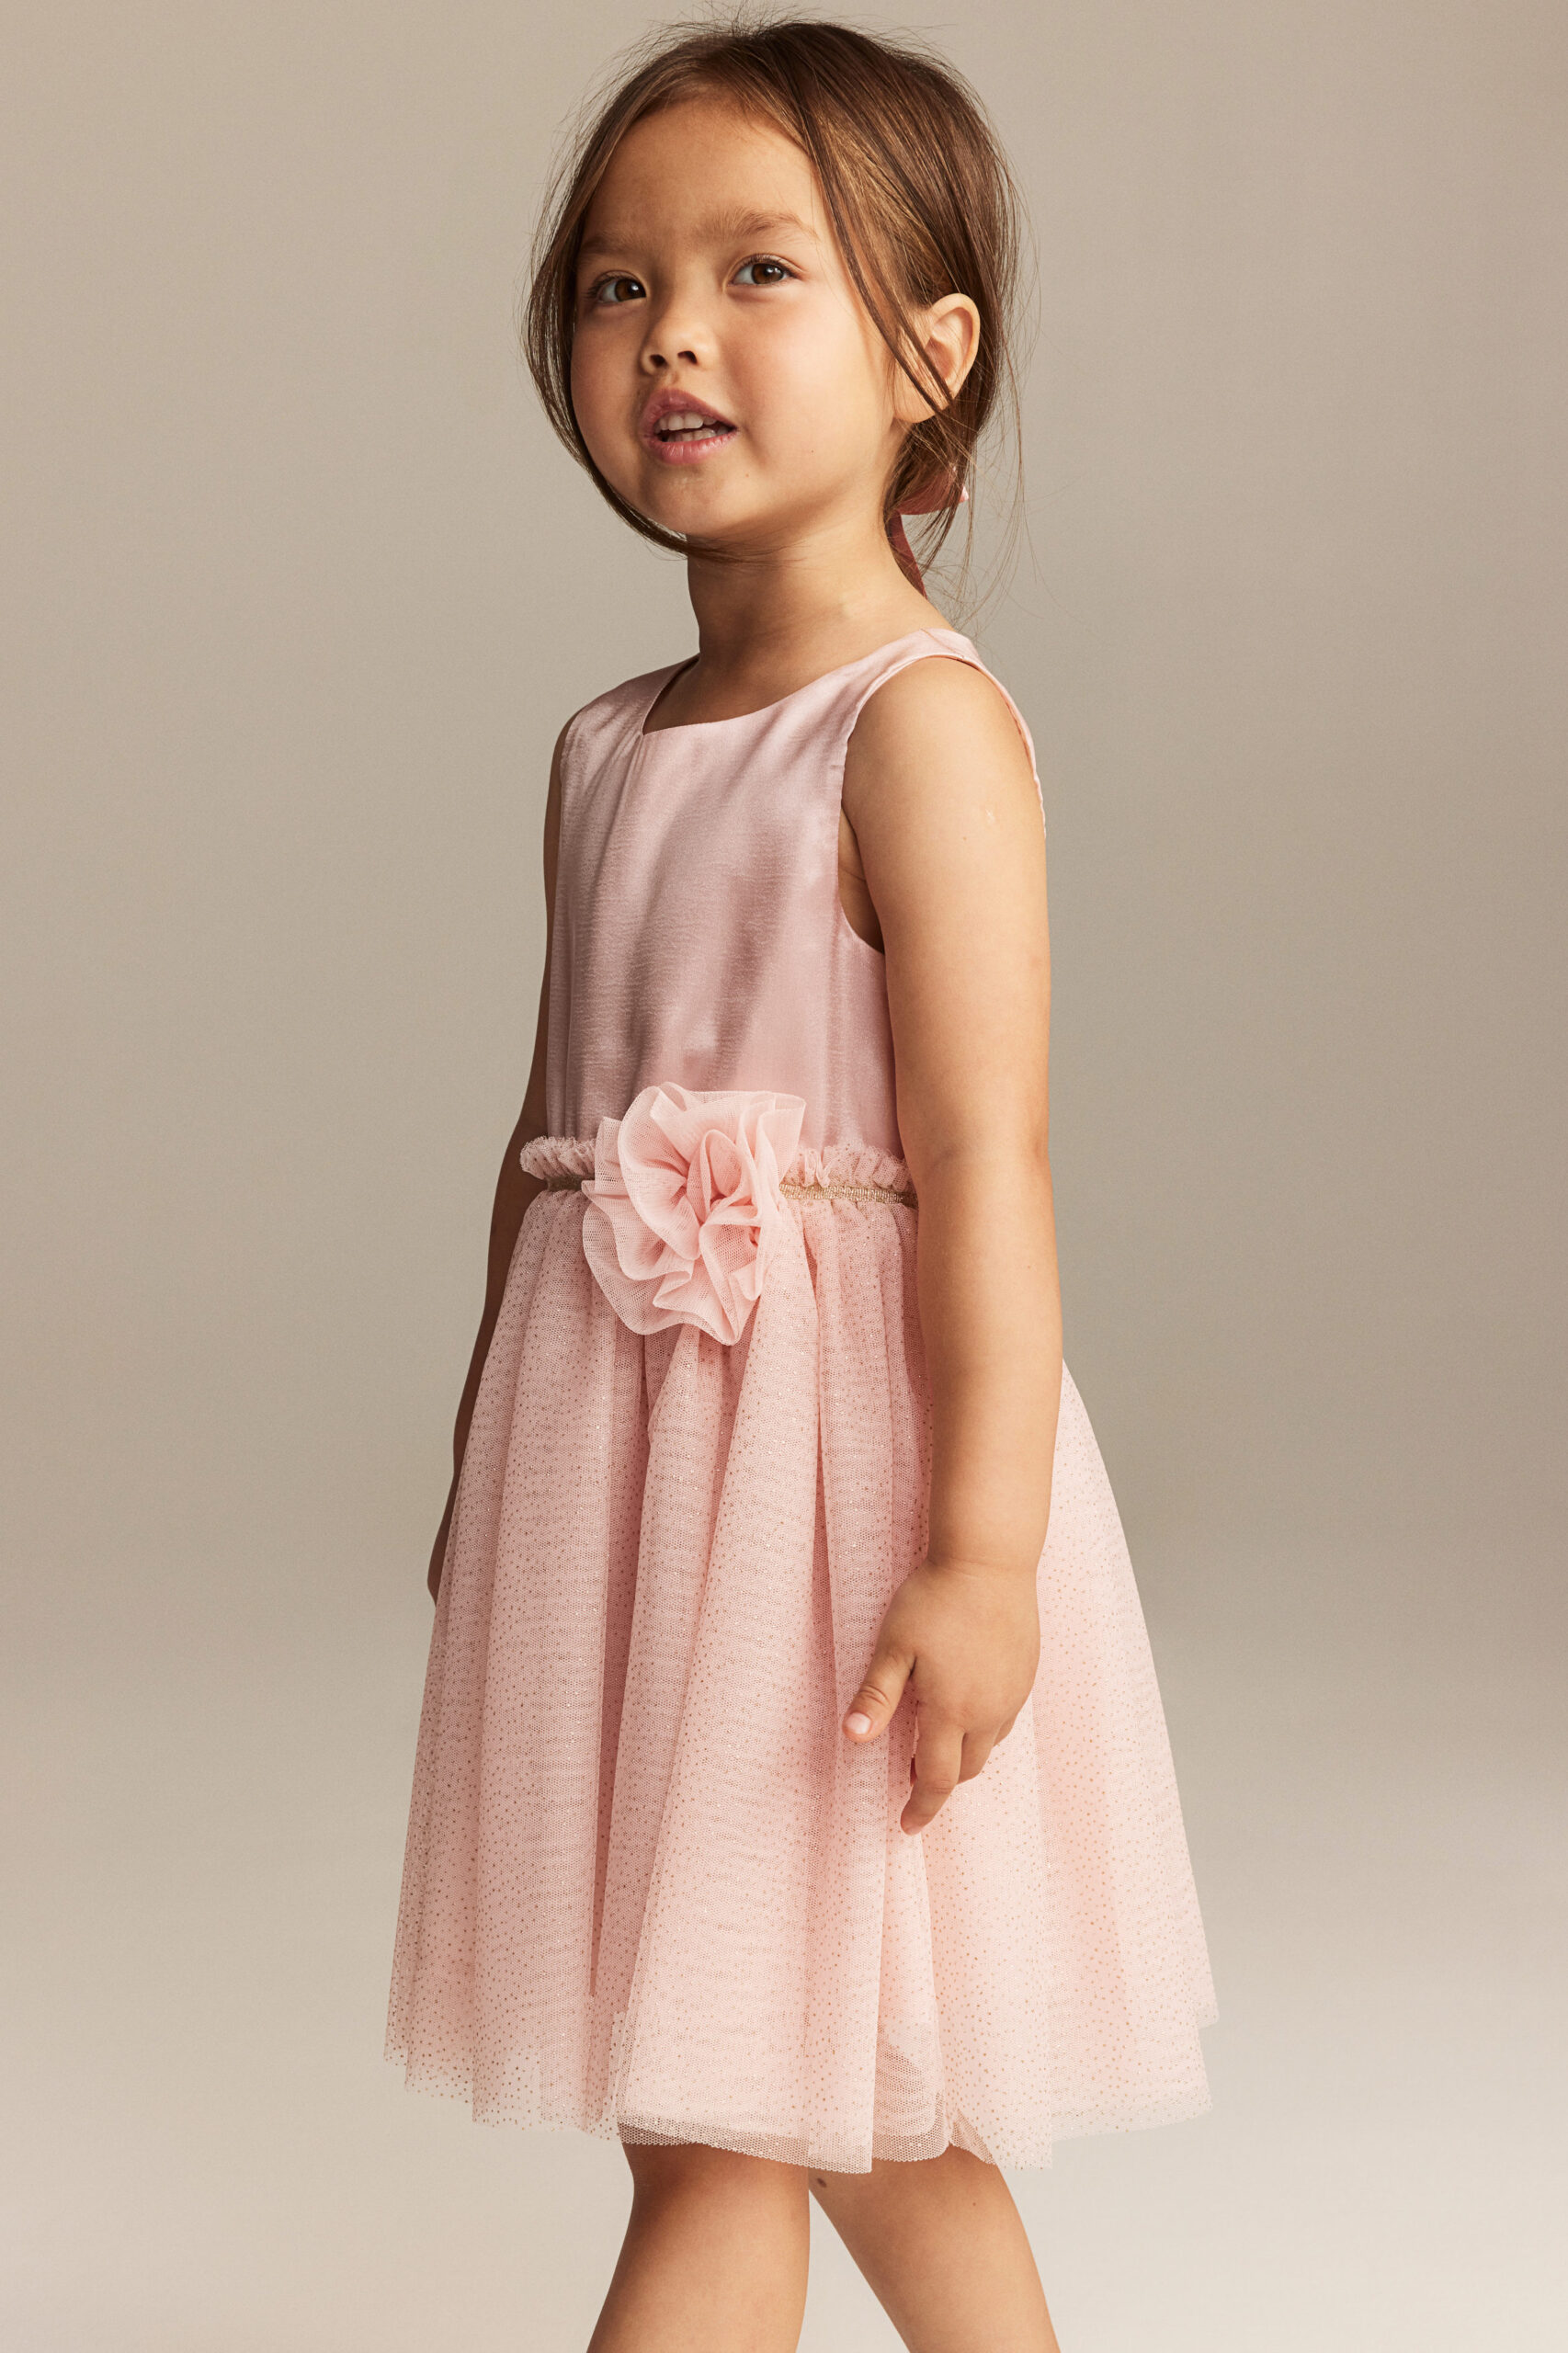 Little girl weaning a pink dress